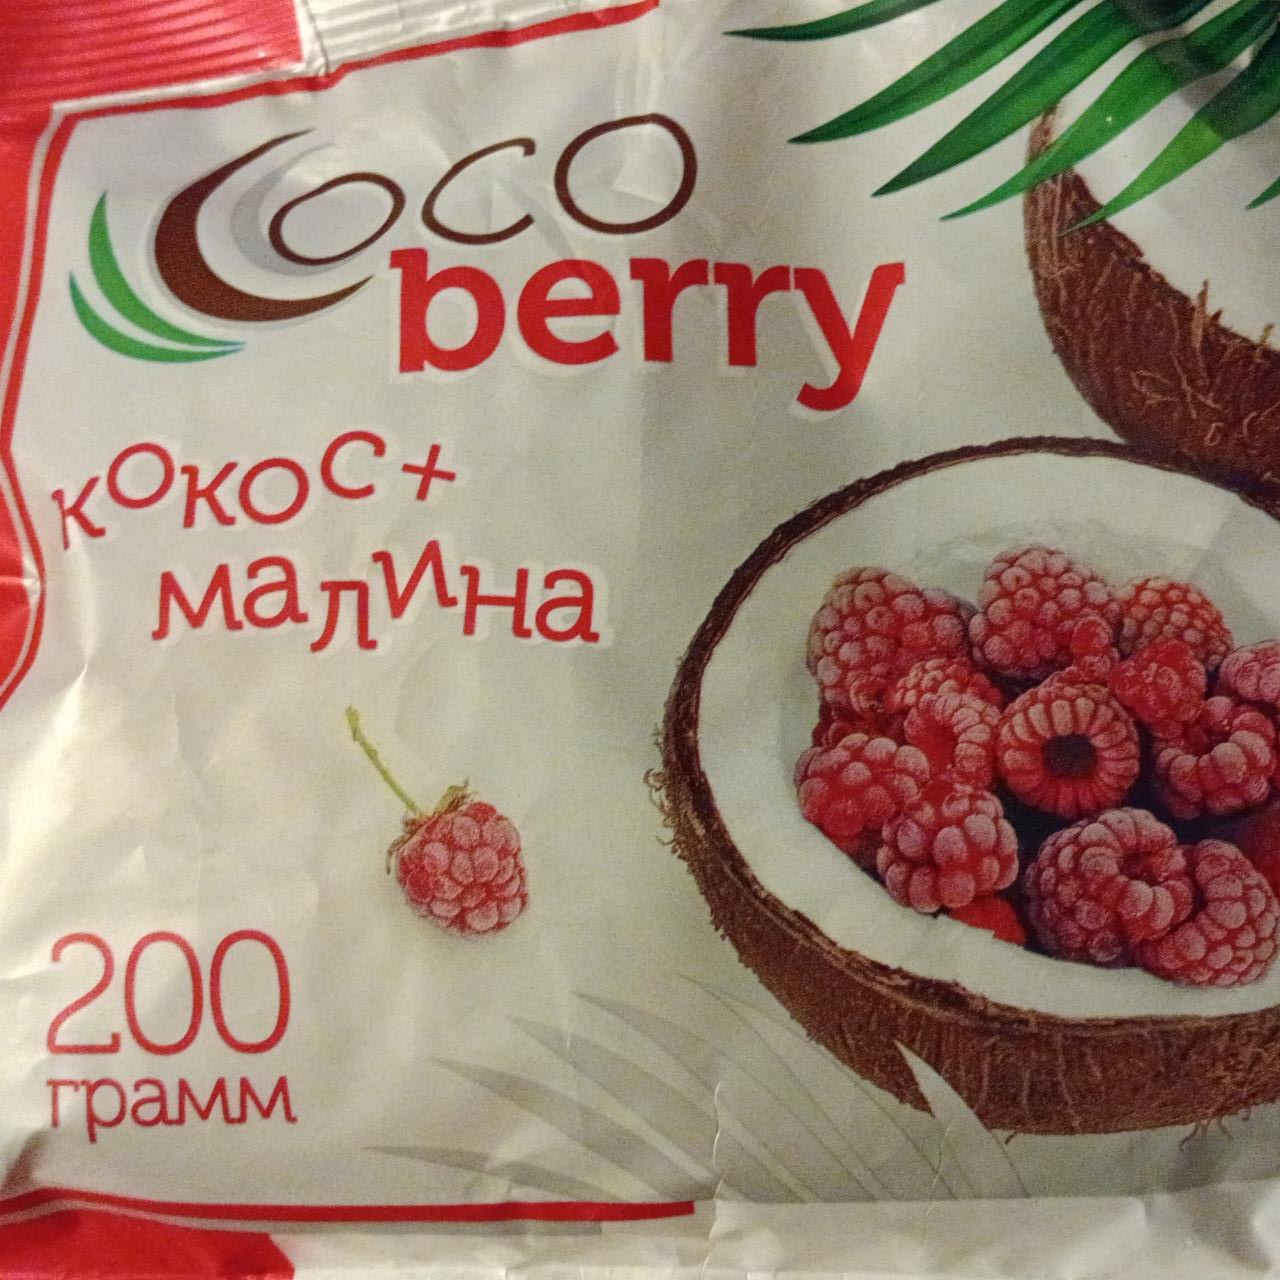 Фото - Конфеты кокос+малина Cocoberry Кондитер профи